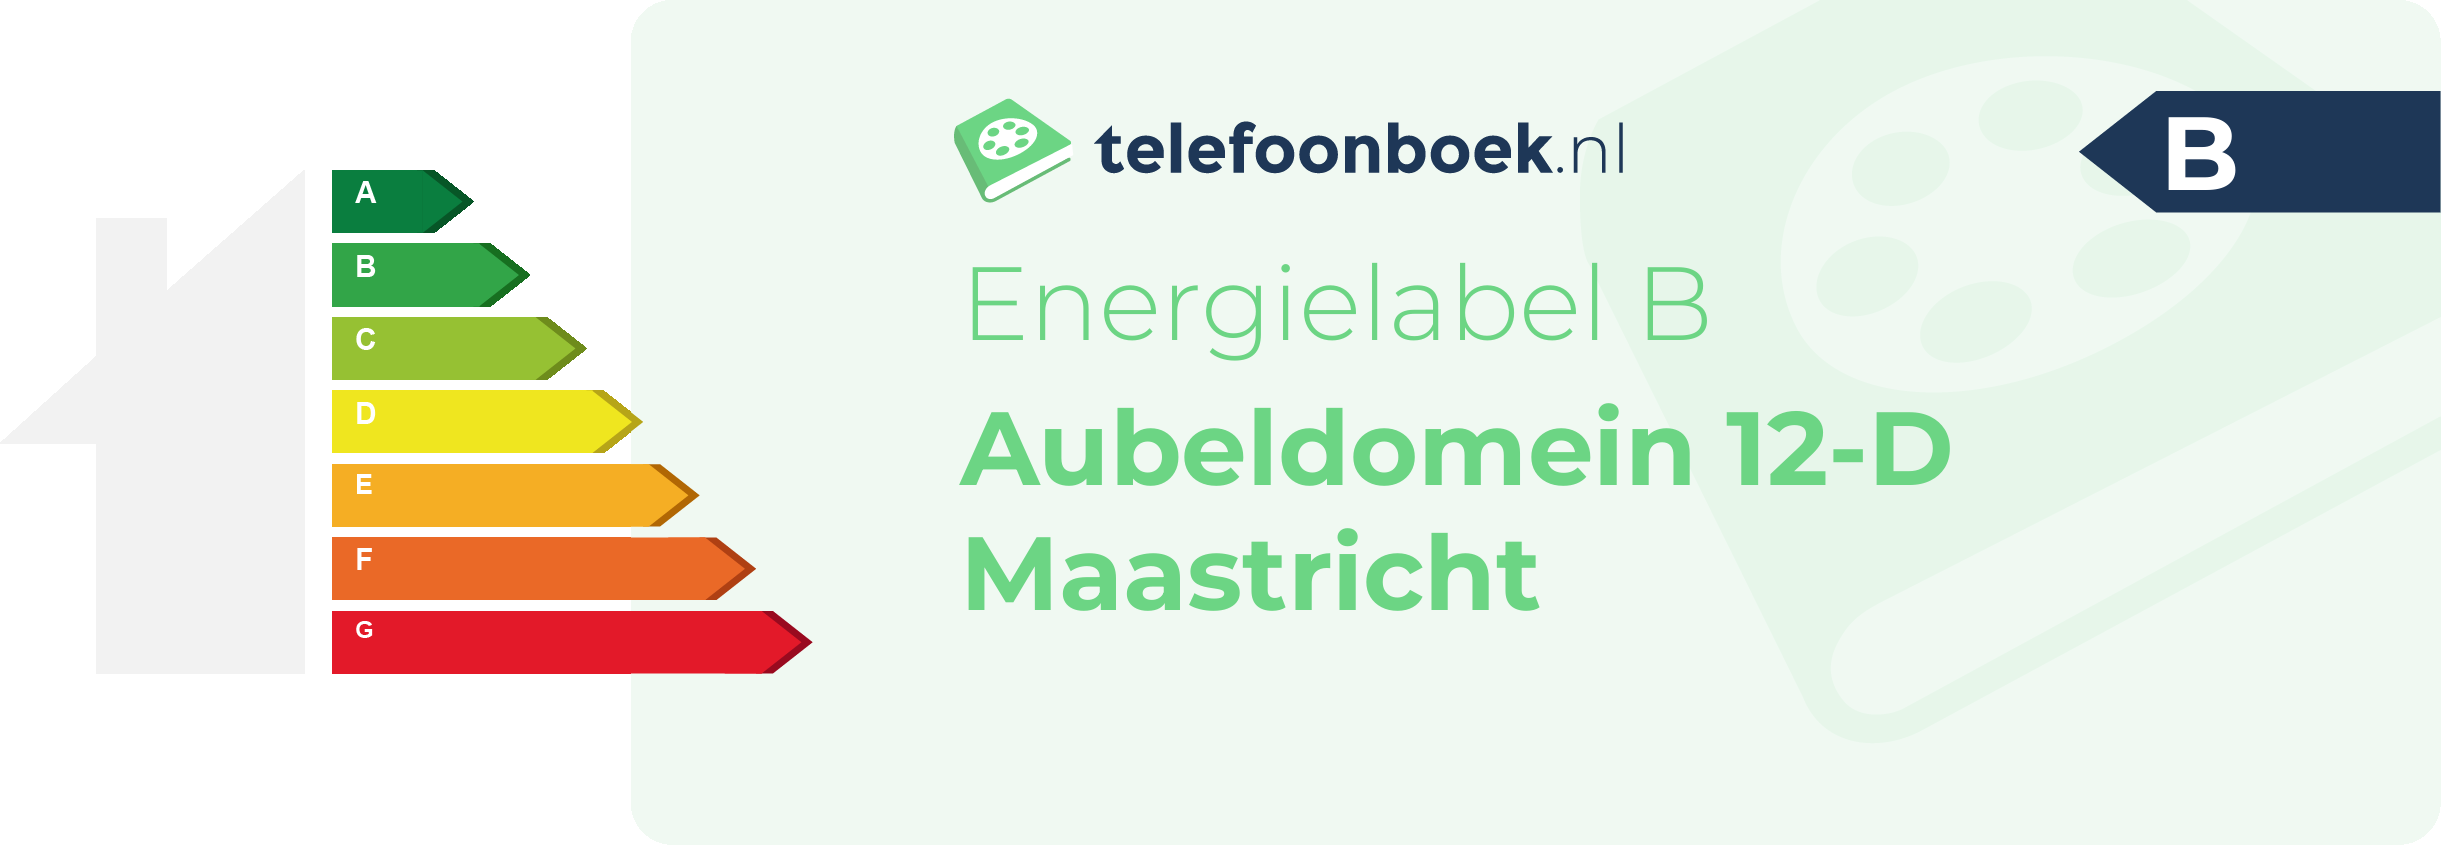 Energielabel Aubeldomein 12-D Maastricht